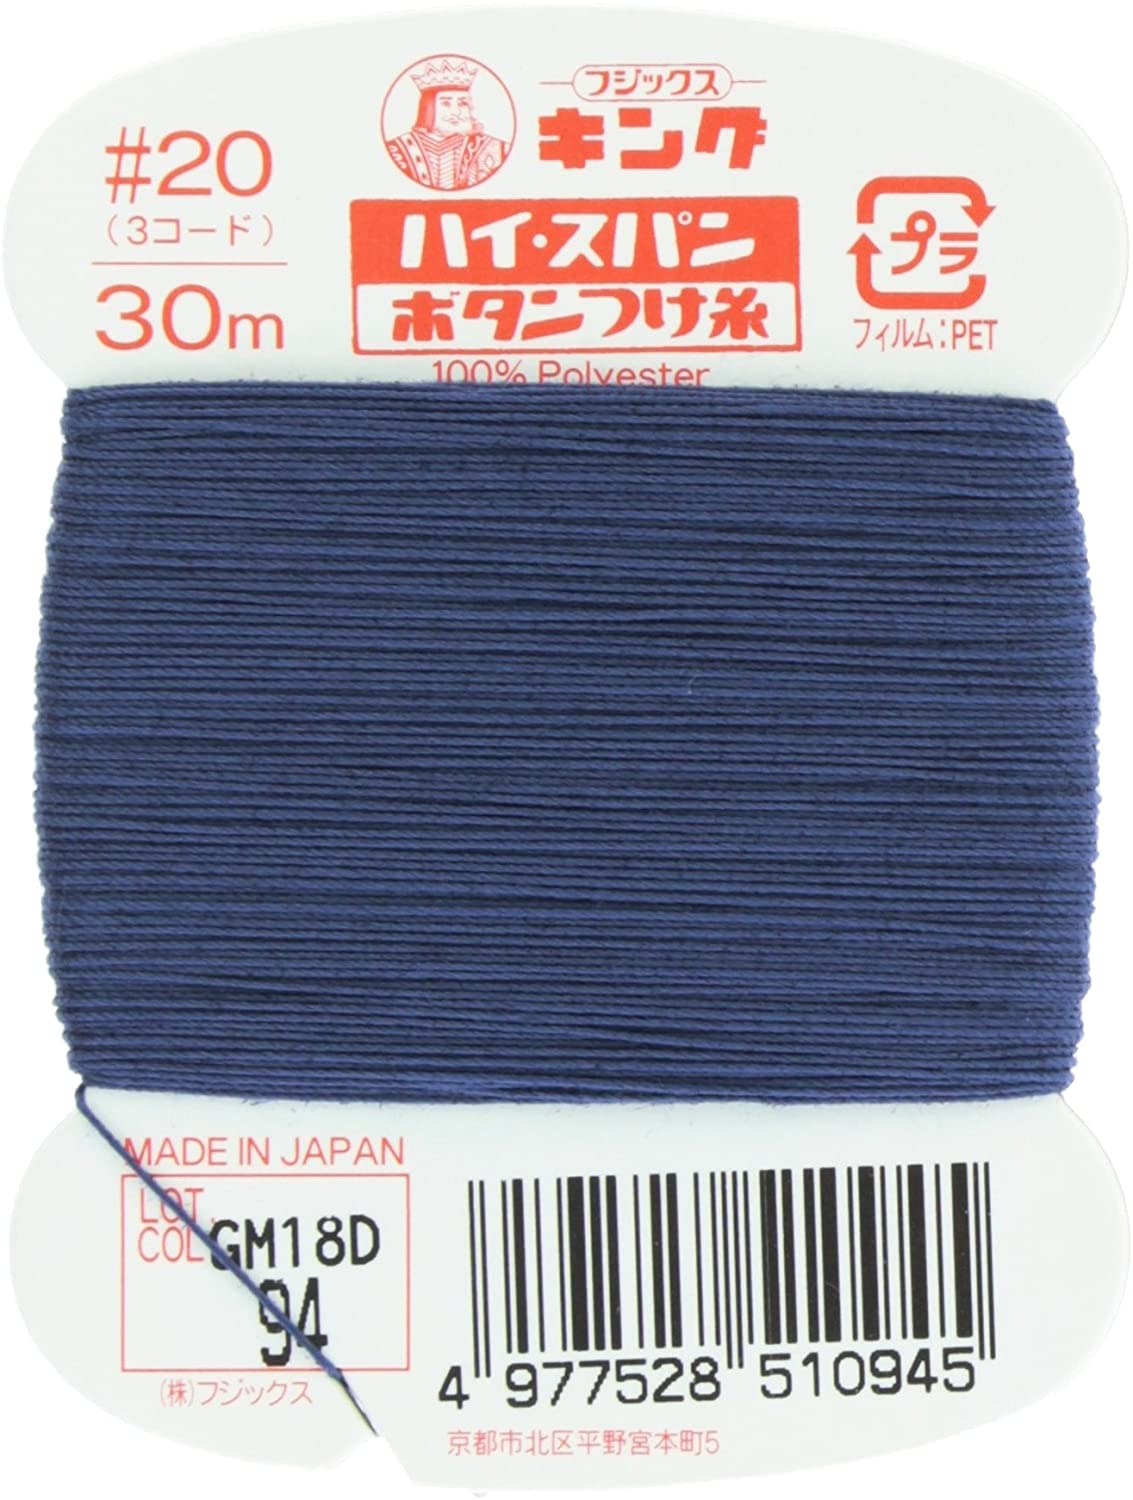 FK51-94 ハイスパンボタンつけ糸 #20 30m巻 (枚)